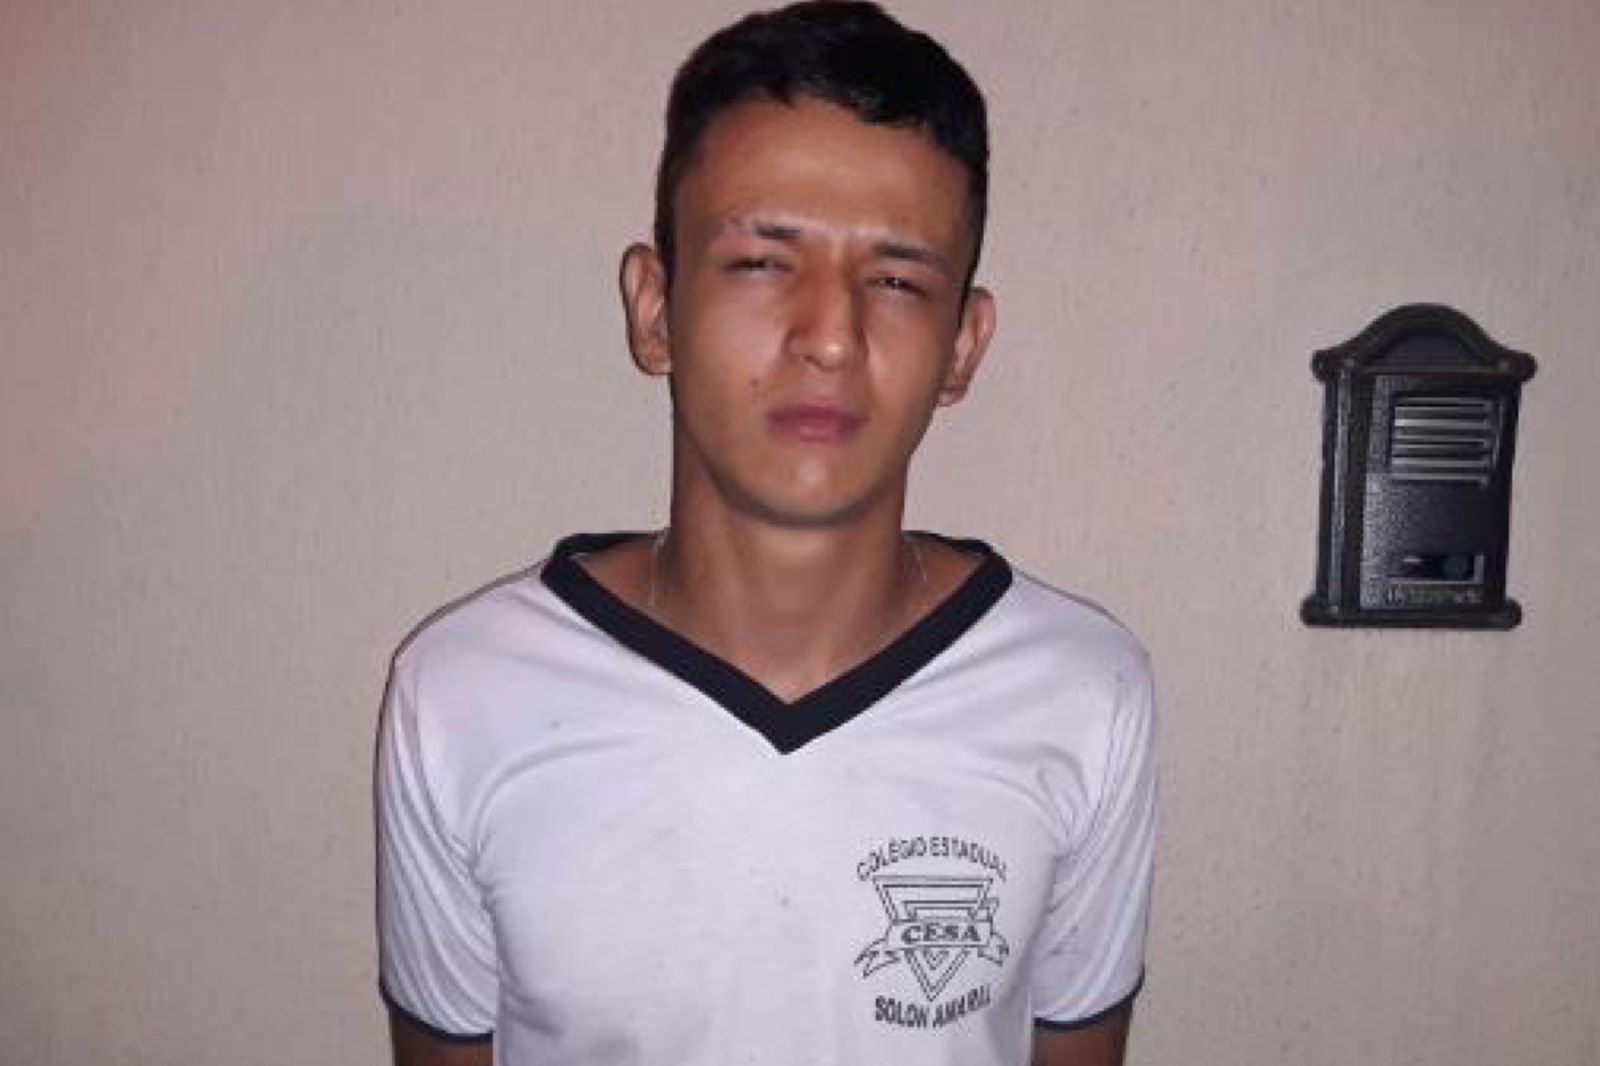 Suspeito de assalto, Lucas Eduardo Lima Dutra tinha 25 anos (Foto: Reprodução)